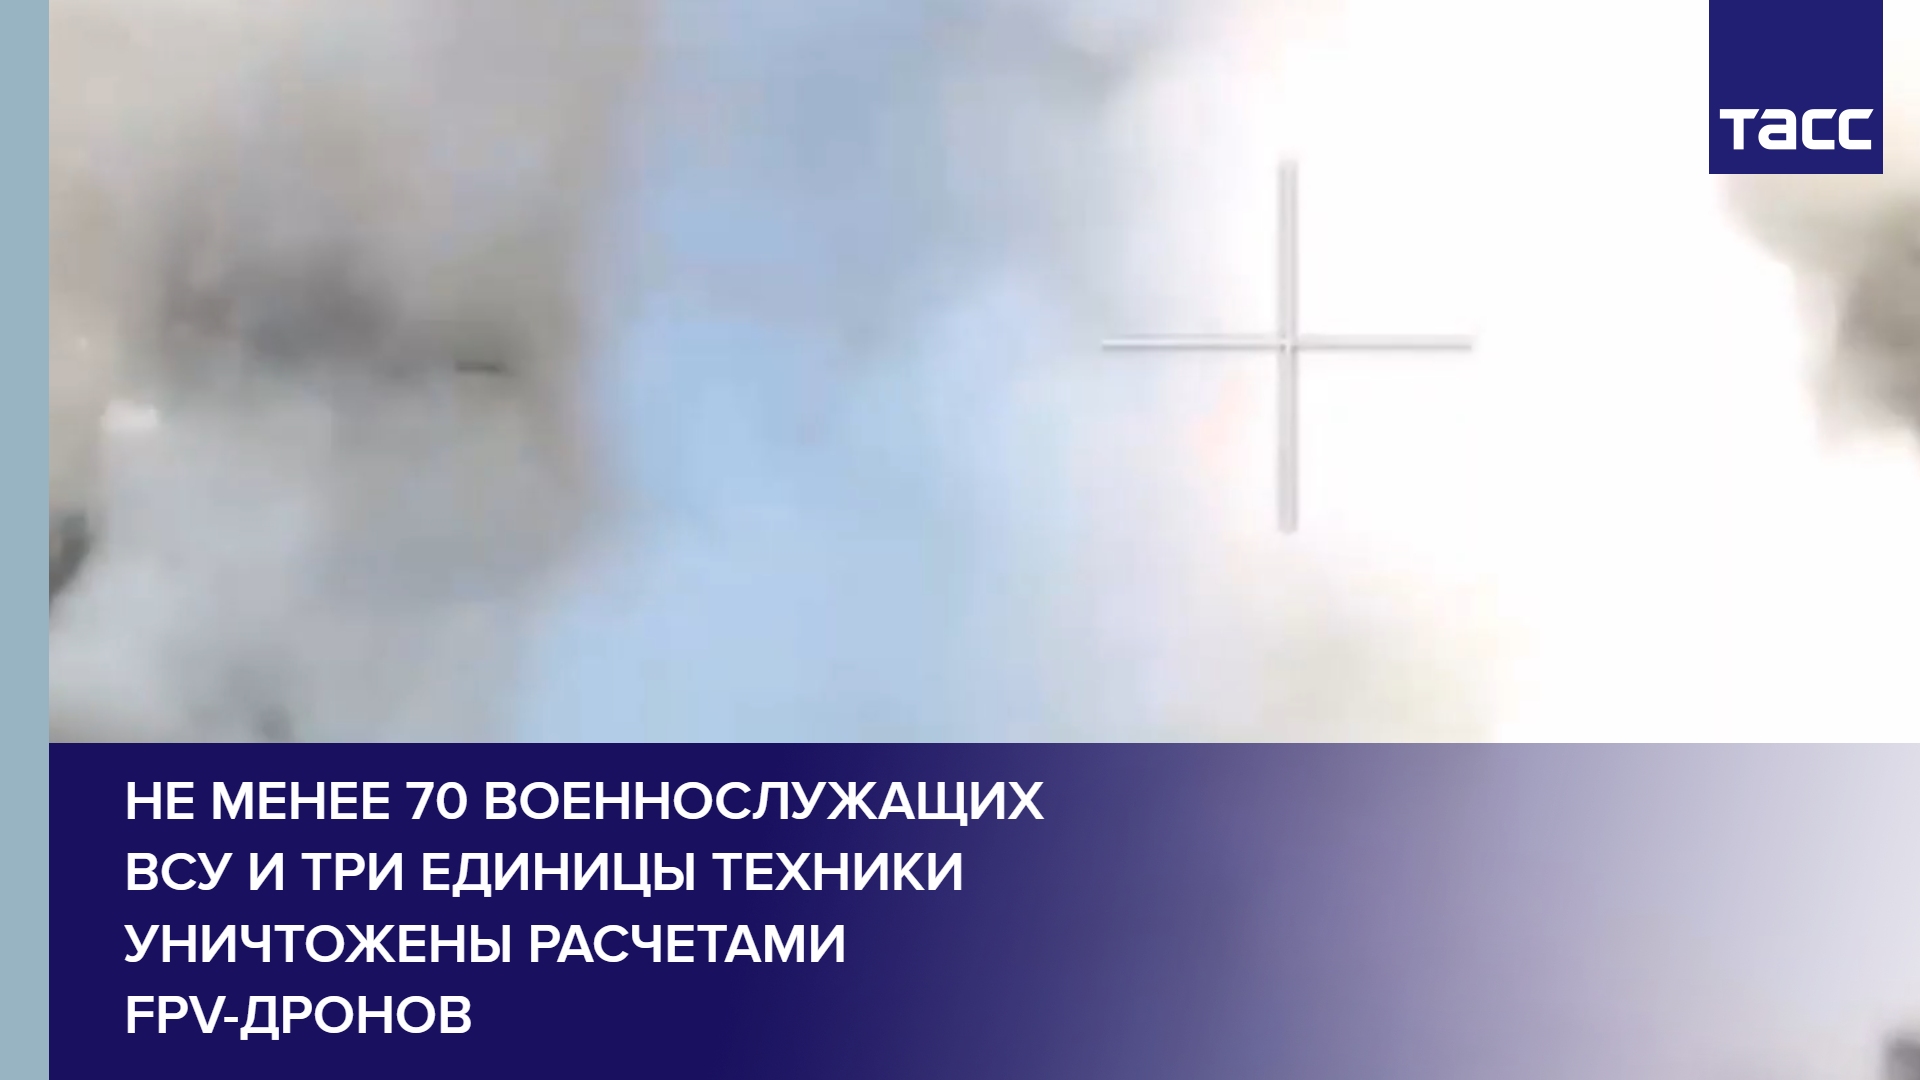 Не менее 70 военнослужащих ВСУ и три единицы техники уничтожены расчетами FPV-дронов #shorts